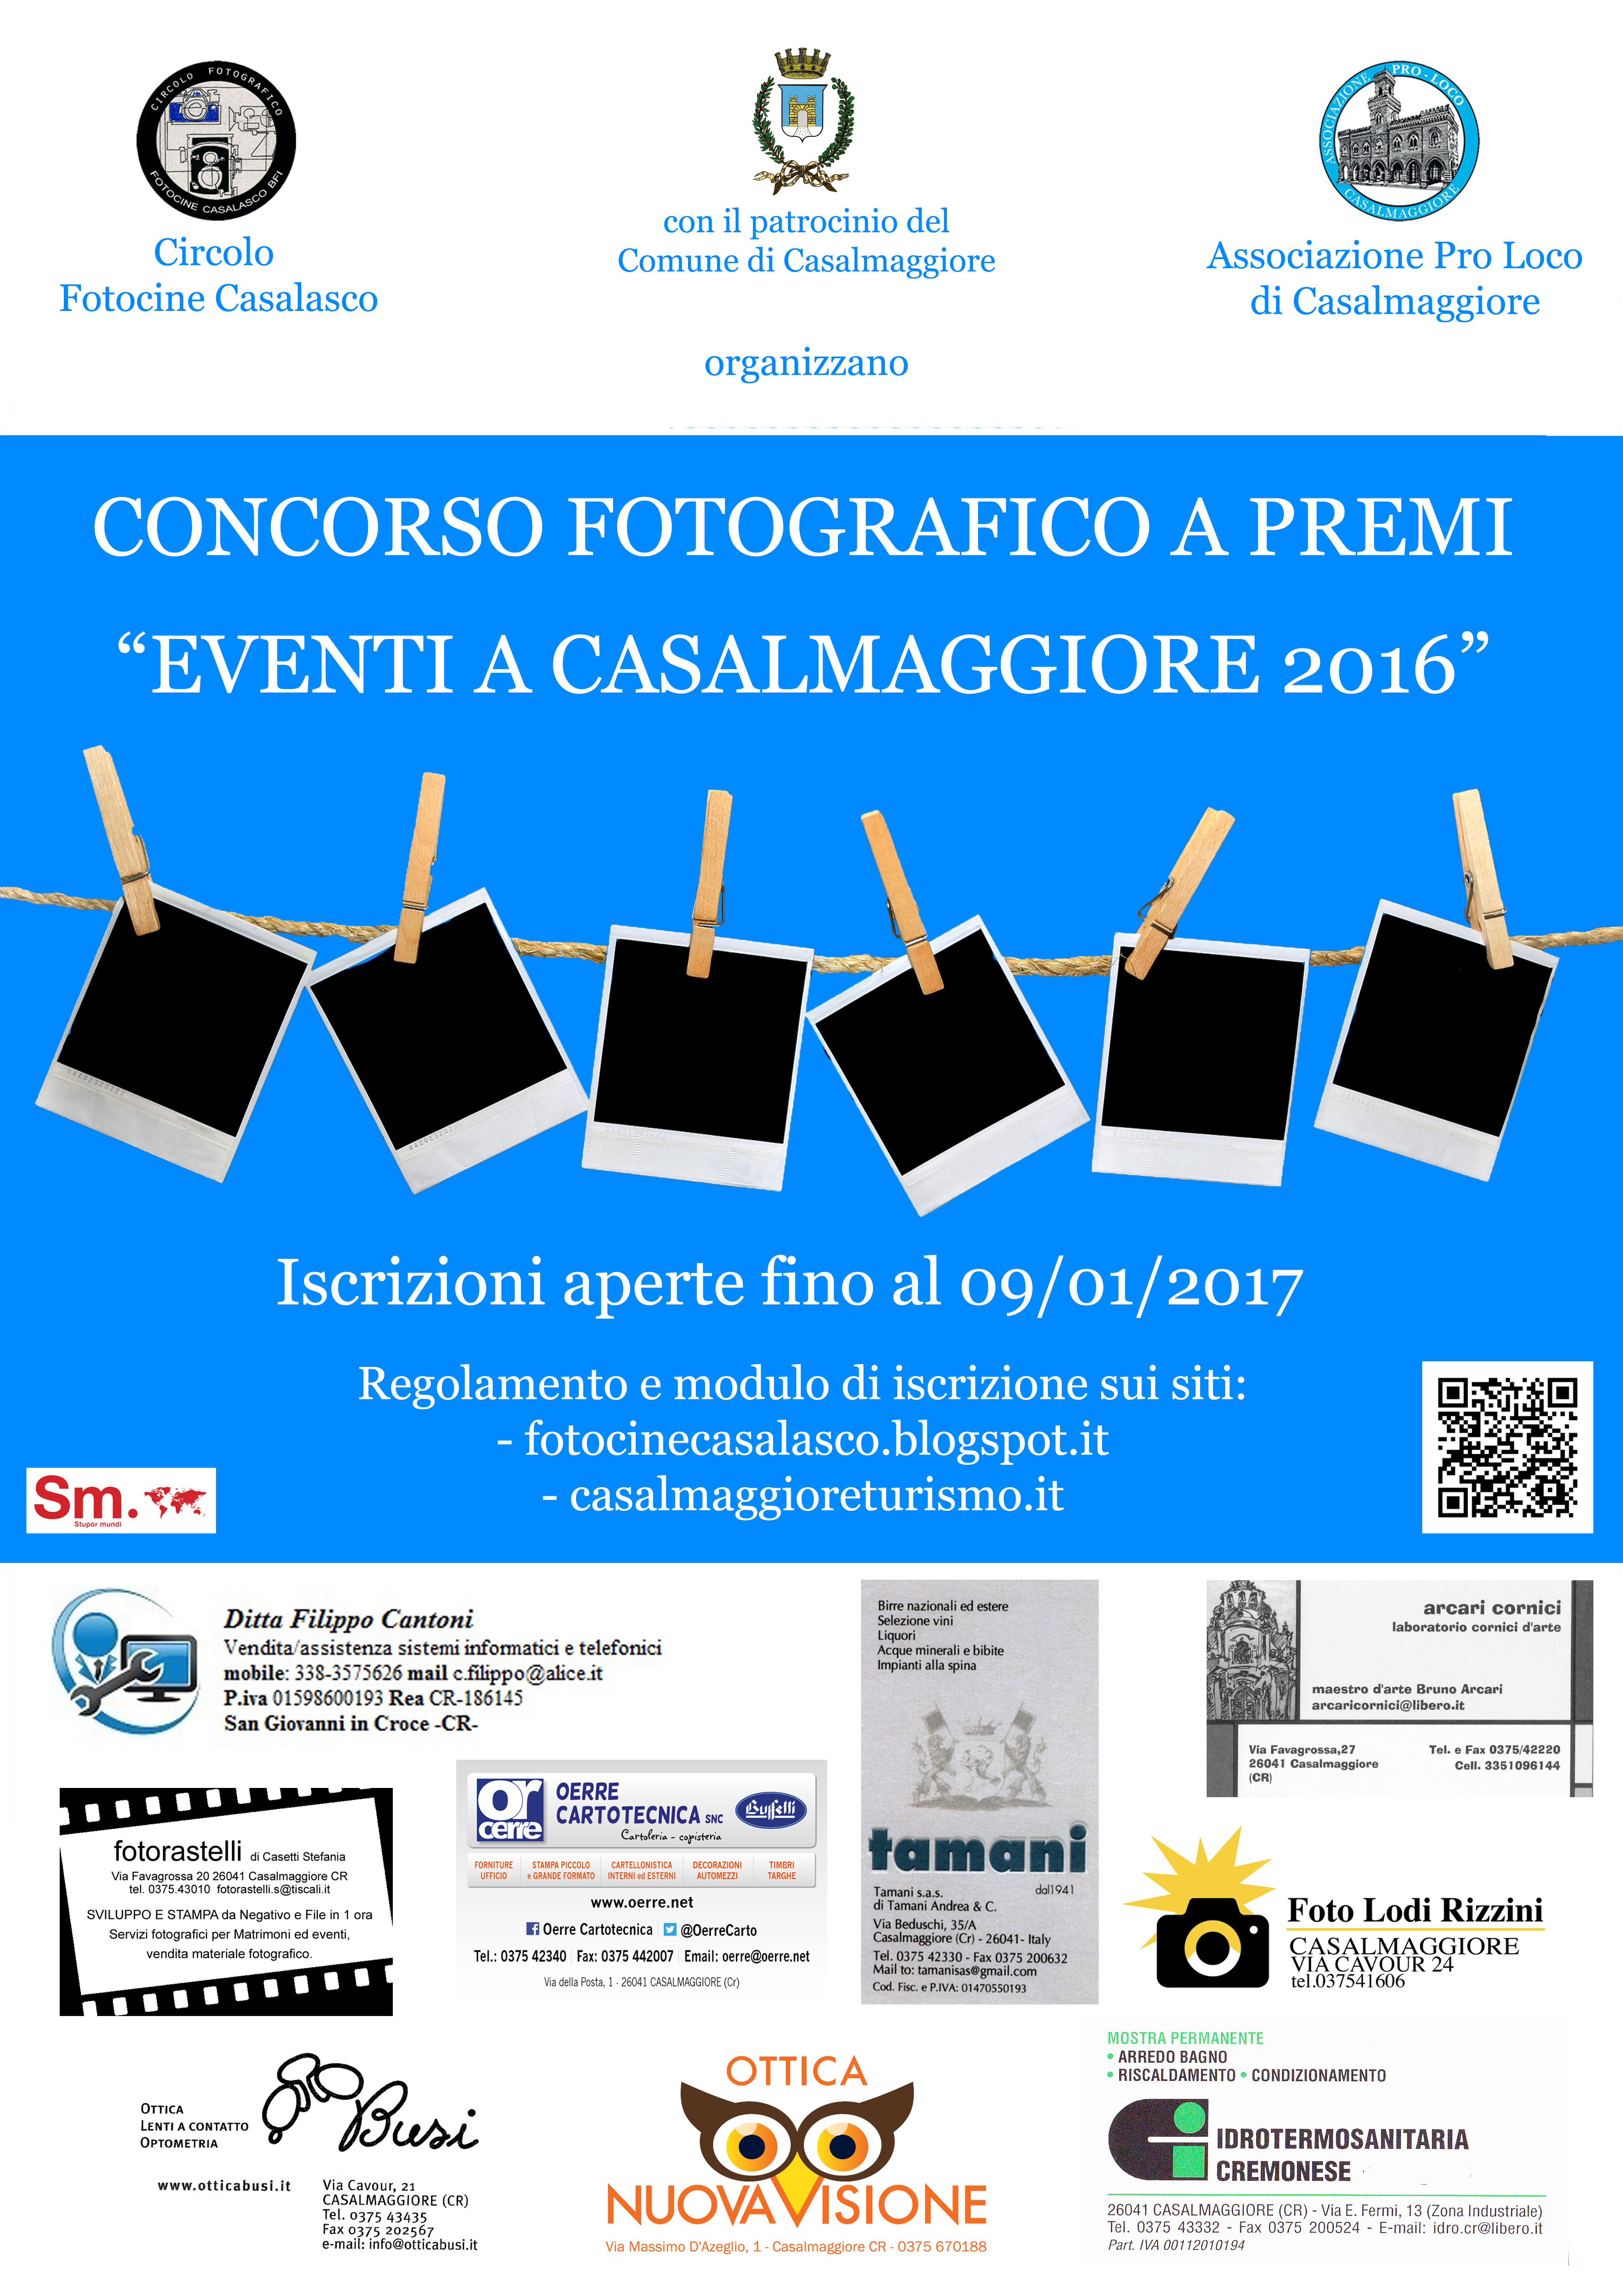 Il Circolo Fotocine Casalasco BFI e l’Associazione Pro Loco di Casalmaggiore, con il patrocinio del Comune di Casalmaggiore, lanciano il primo concorso fotografico “Eventi a Casalmaggiore 2016”.